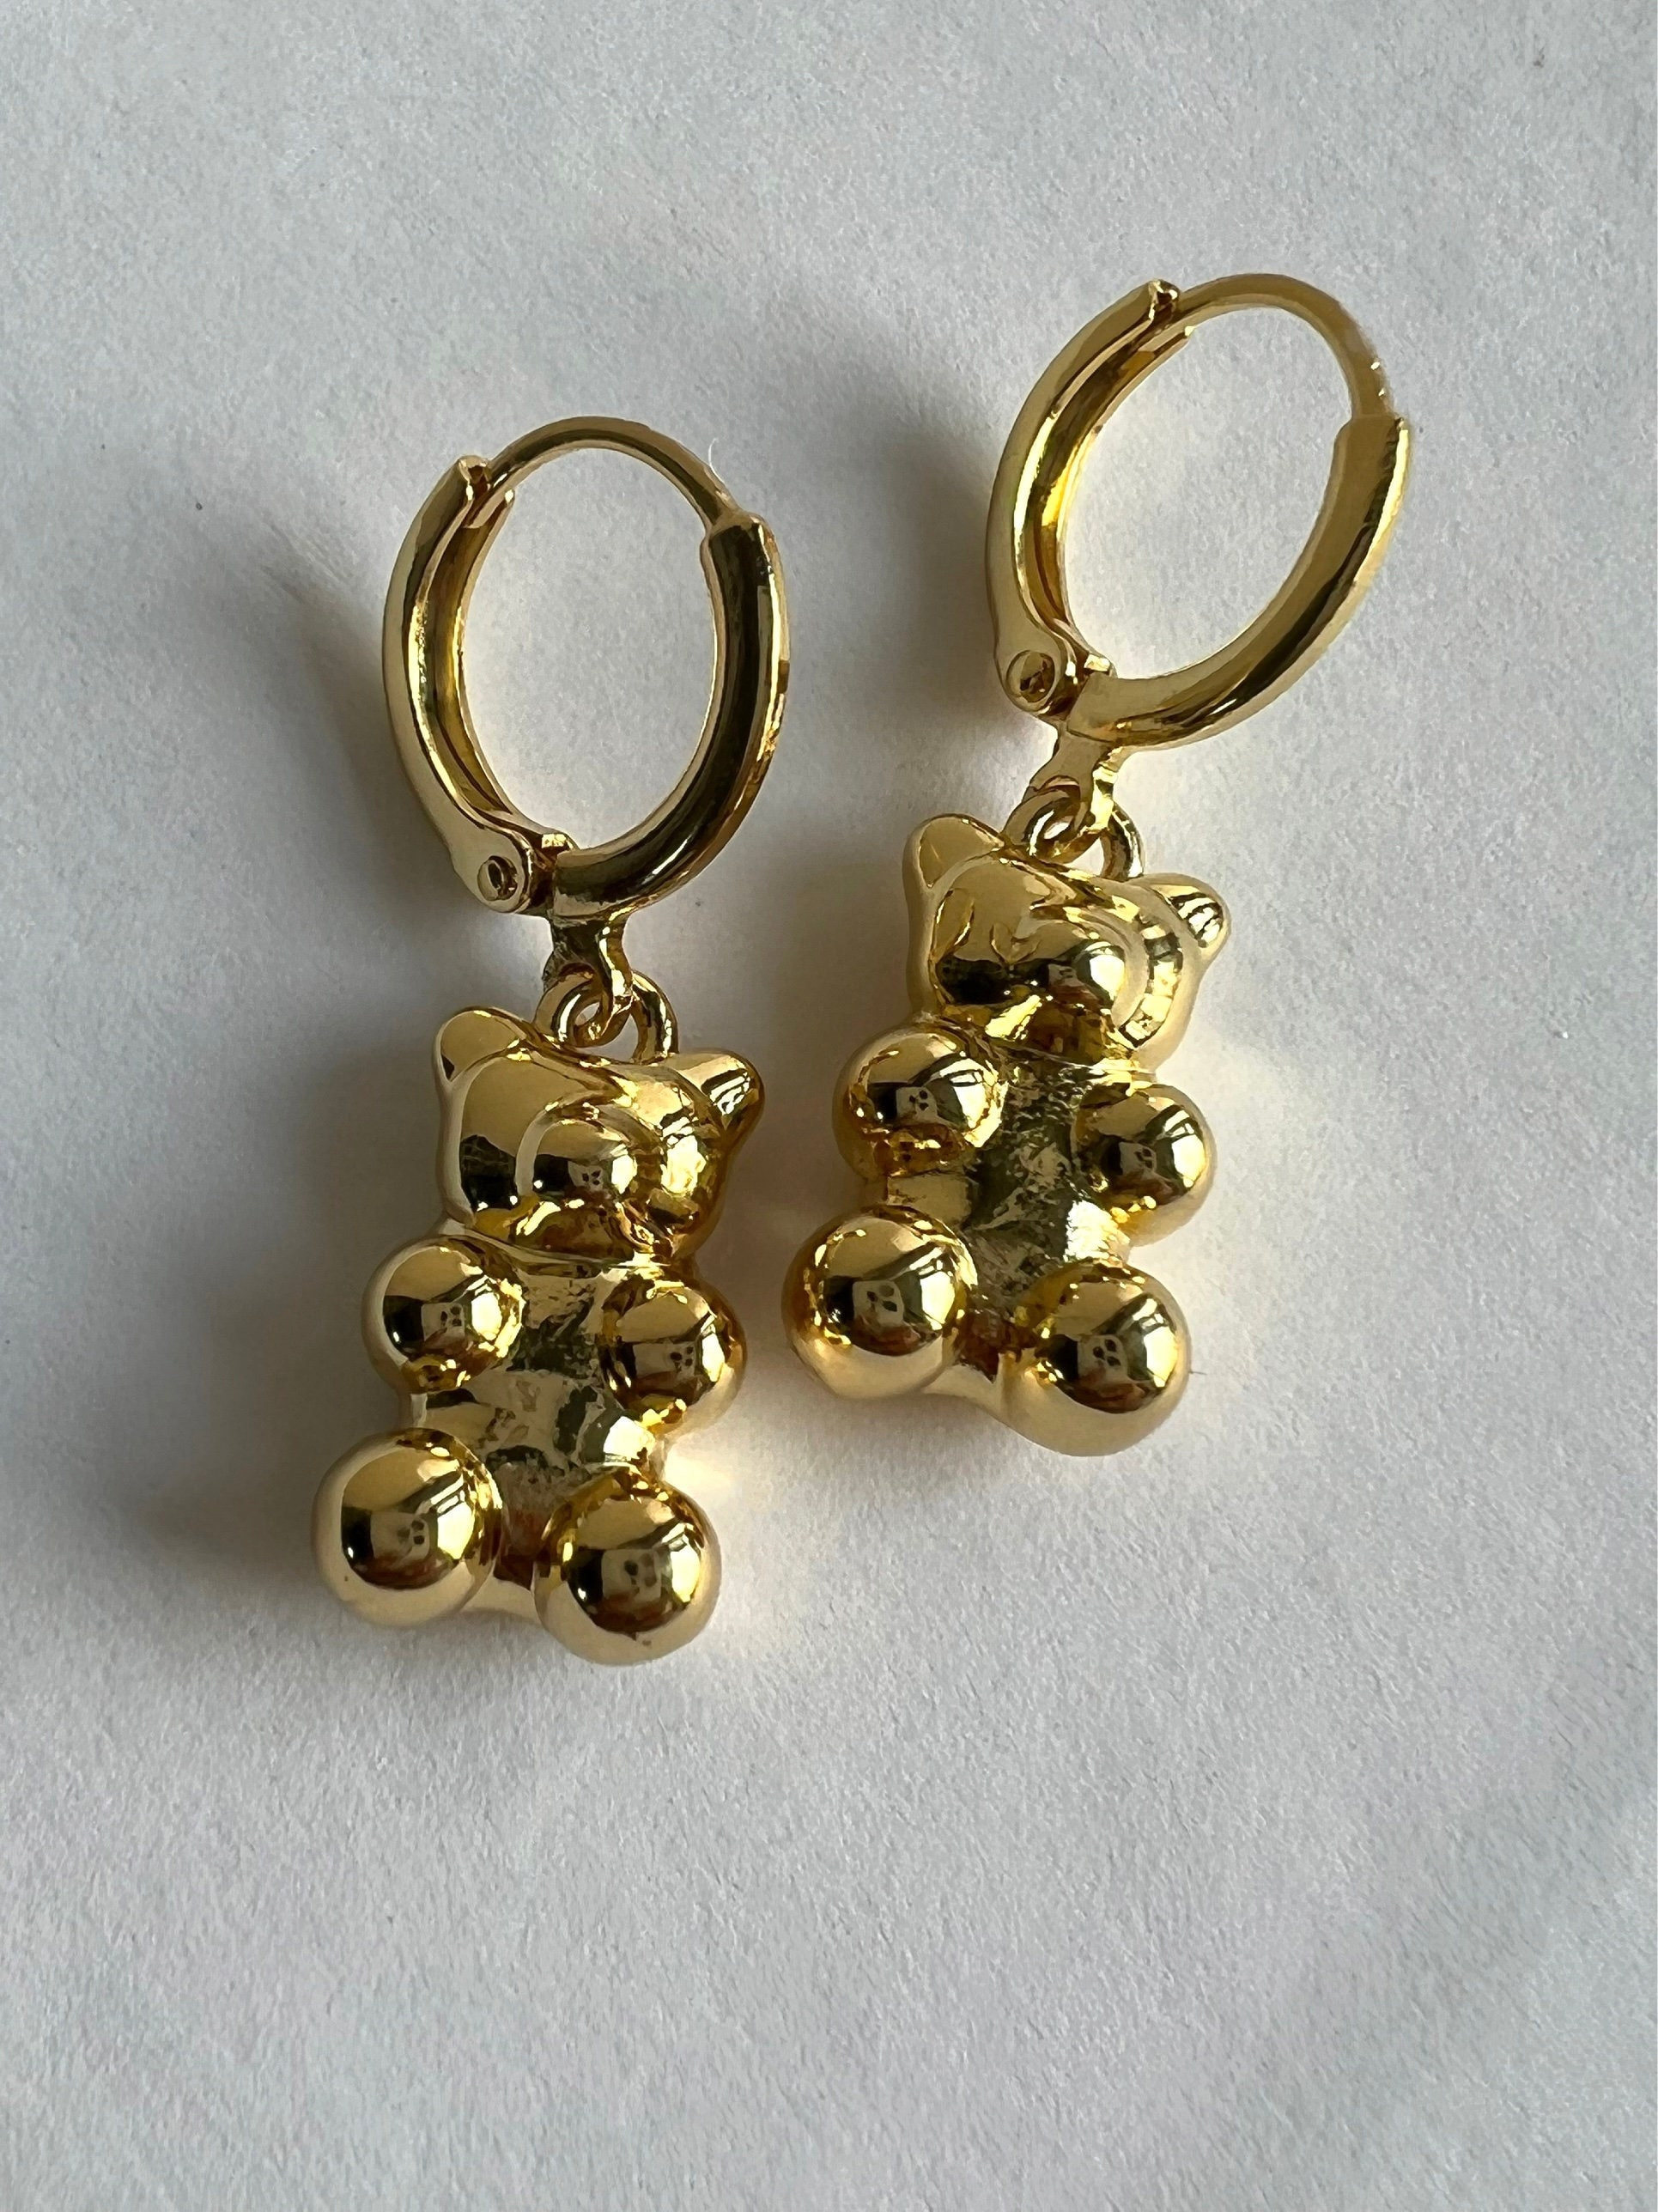 Gold Teddy Gummy BEAR Earrings Gold Charm Pendant Teddy Bear Animal Necklace  SET Hoop Earrings Waterproof Jewelry Gif for Her Friend Sister